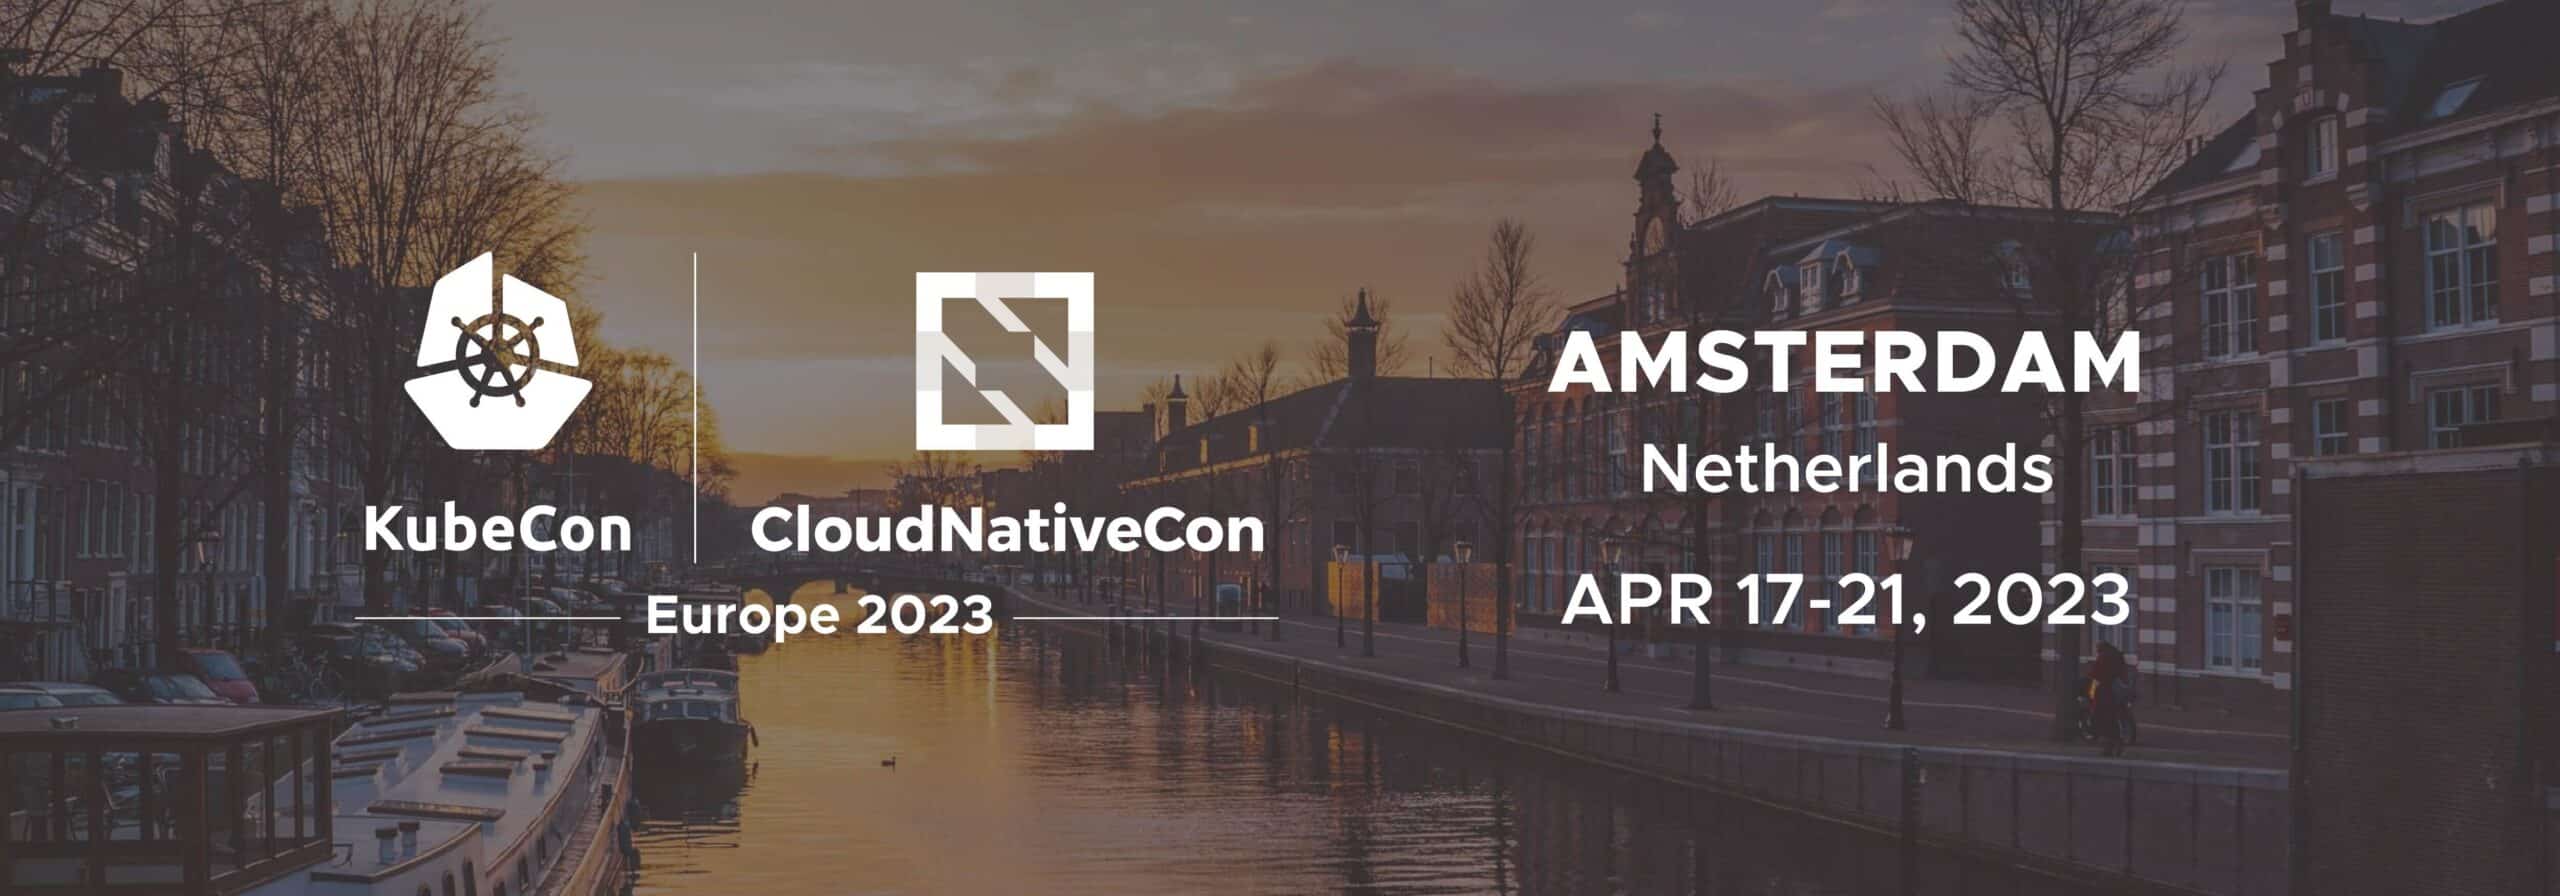 Register for KubeCon+ CloudNativeCon North America